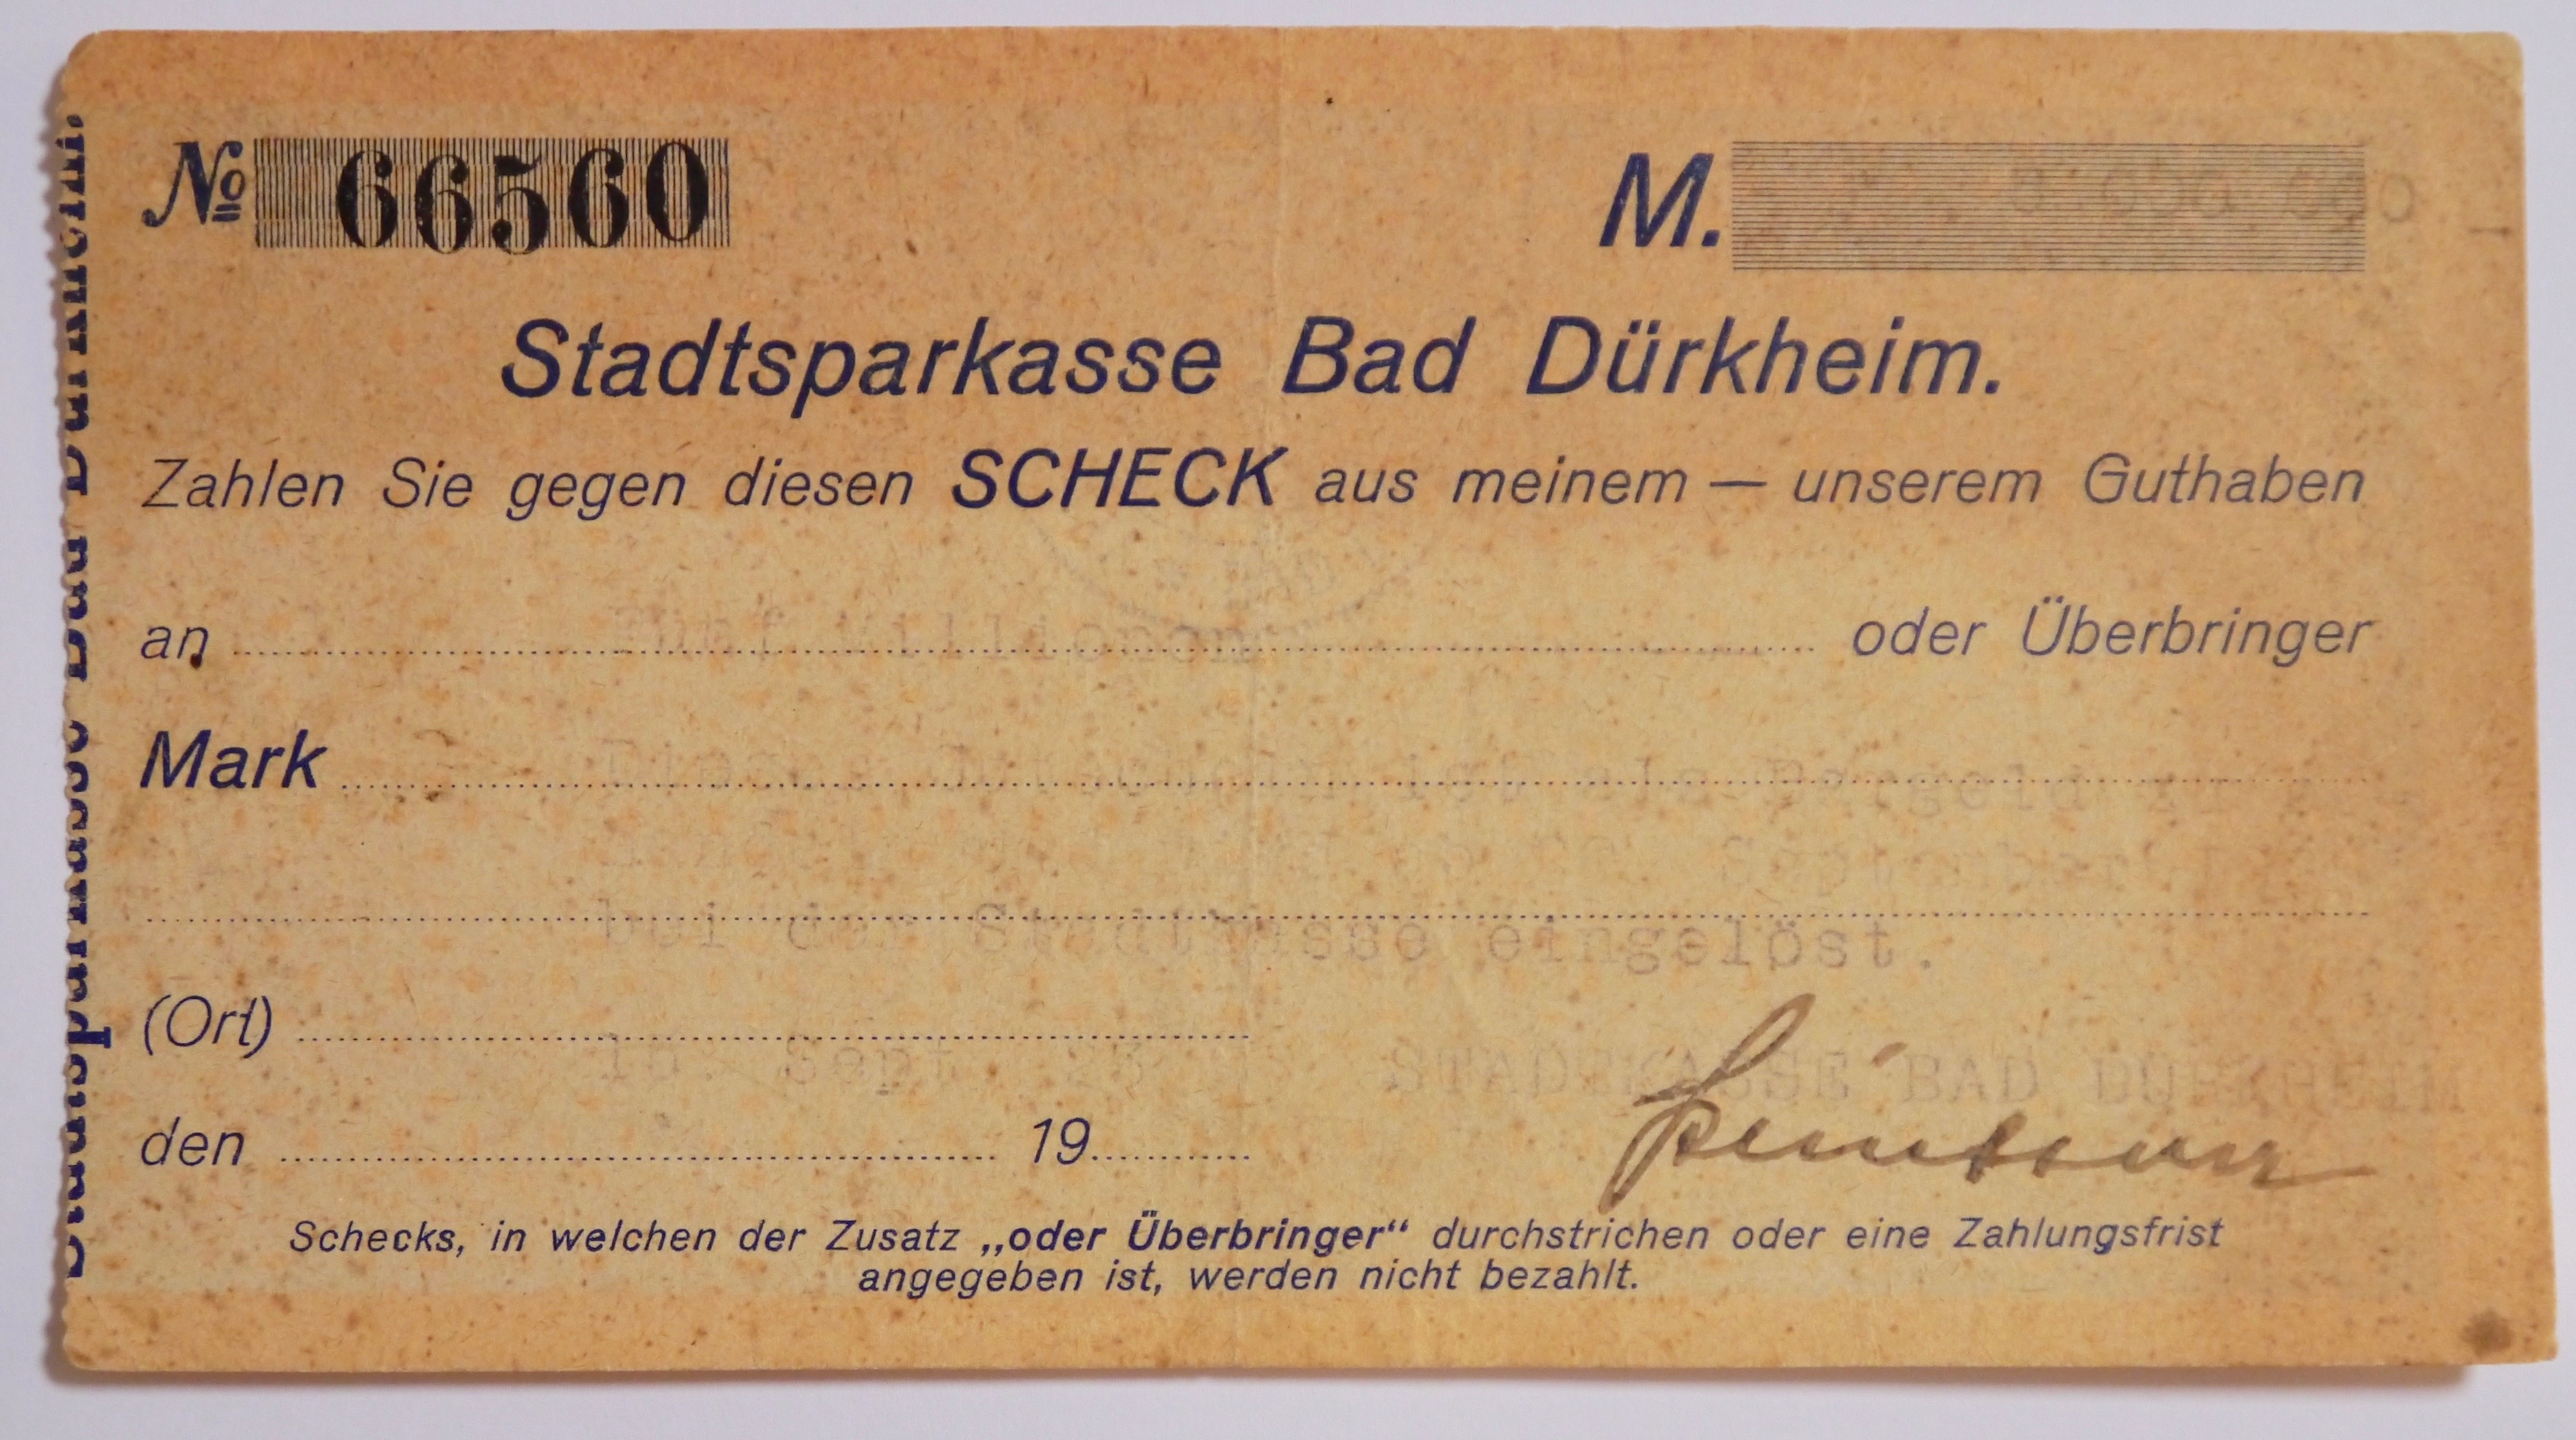 Notgeld in Form eines Schecks der Stadtsparkasse Bad Dürkheim fünf Millionen Mark
Serien-Nummer: No 66560 (Museumsgesellschaft Bad Dürkheim e.V. CC BY-NC-SA)